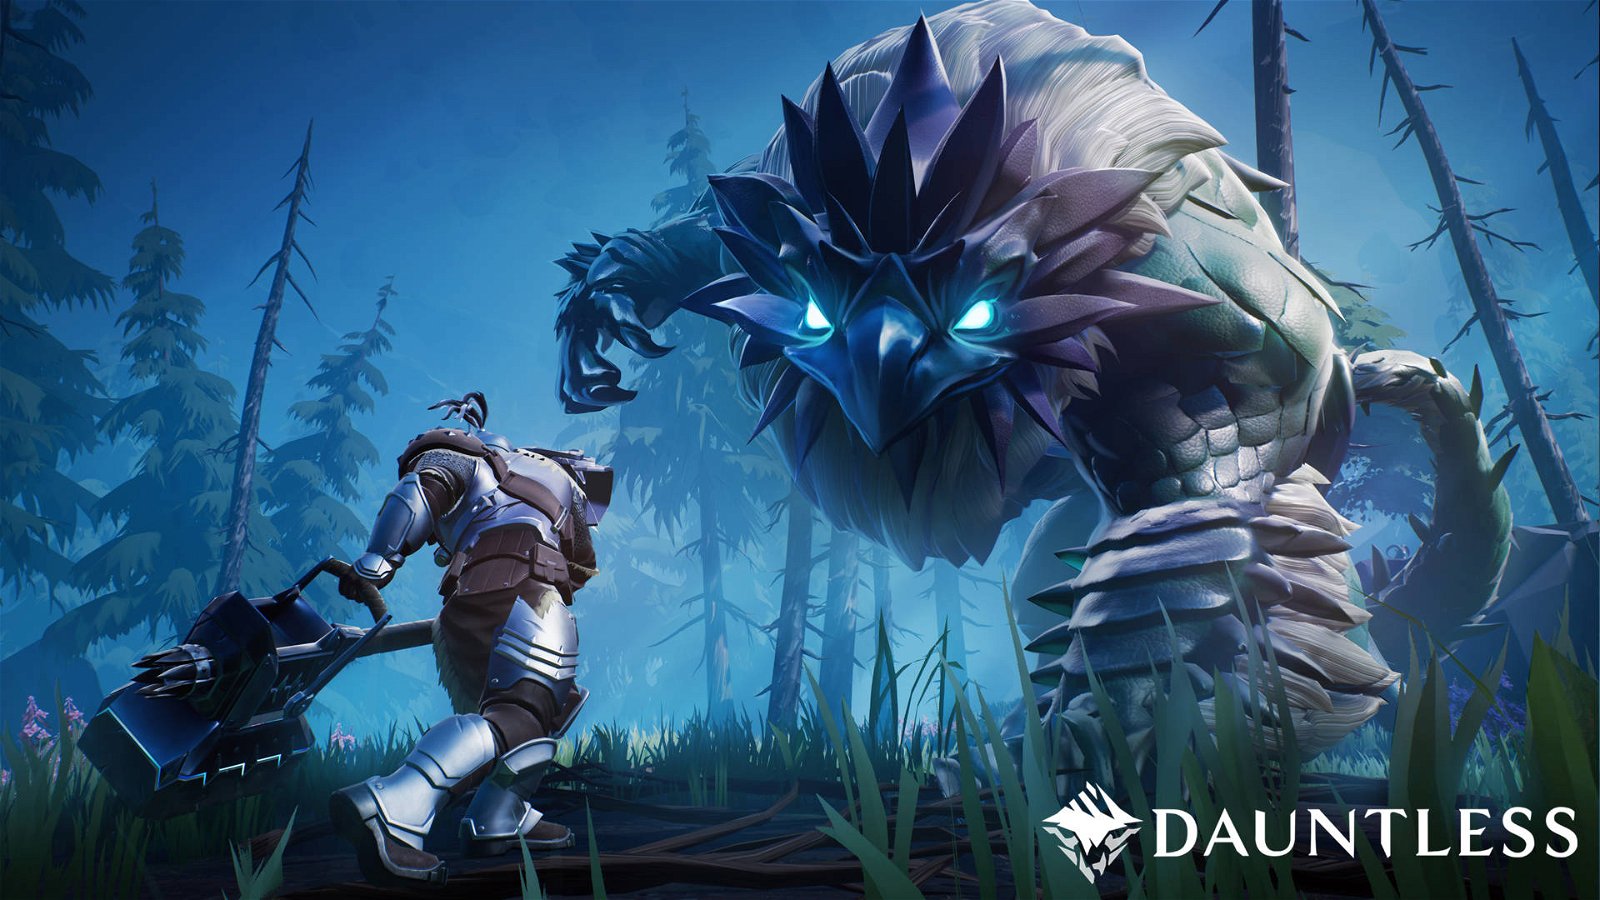 Immagine di Dauntless si sposta su Epic Games Store, con cross-play e cross-progression